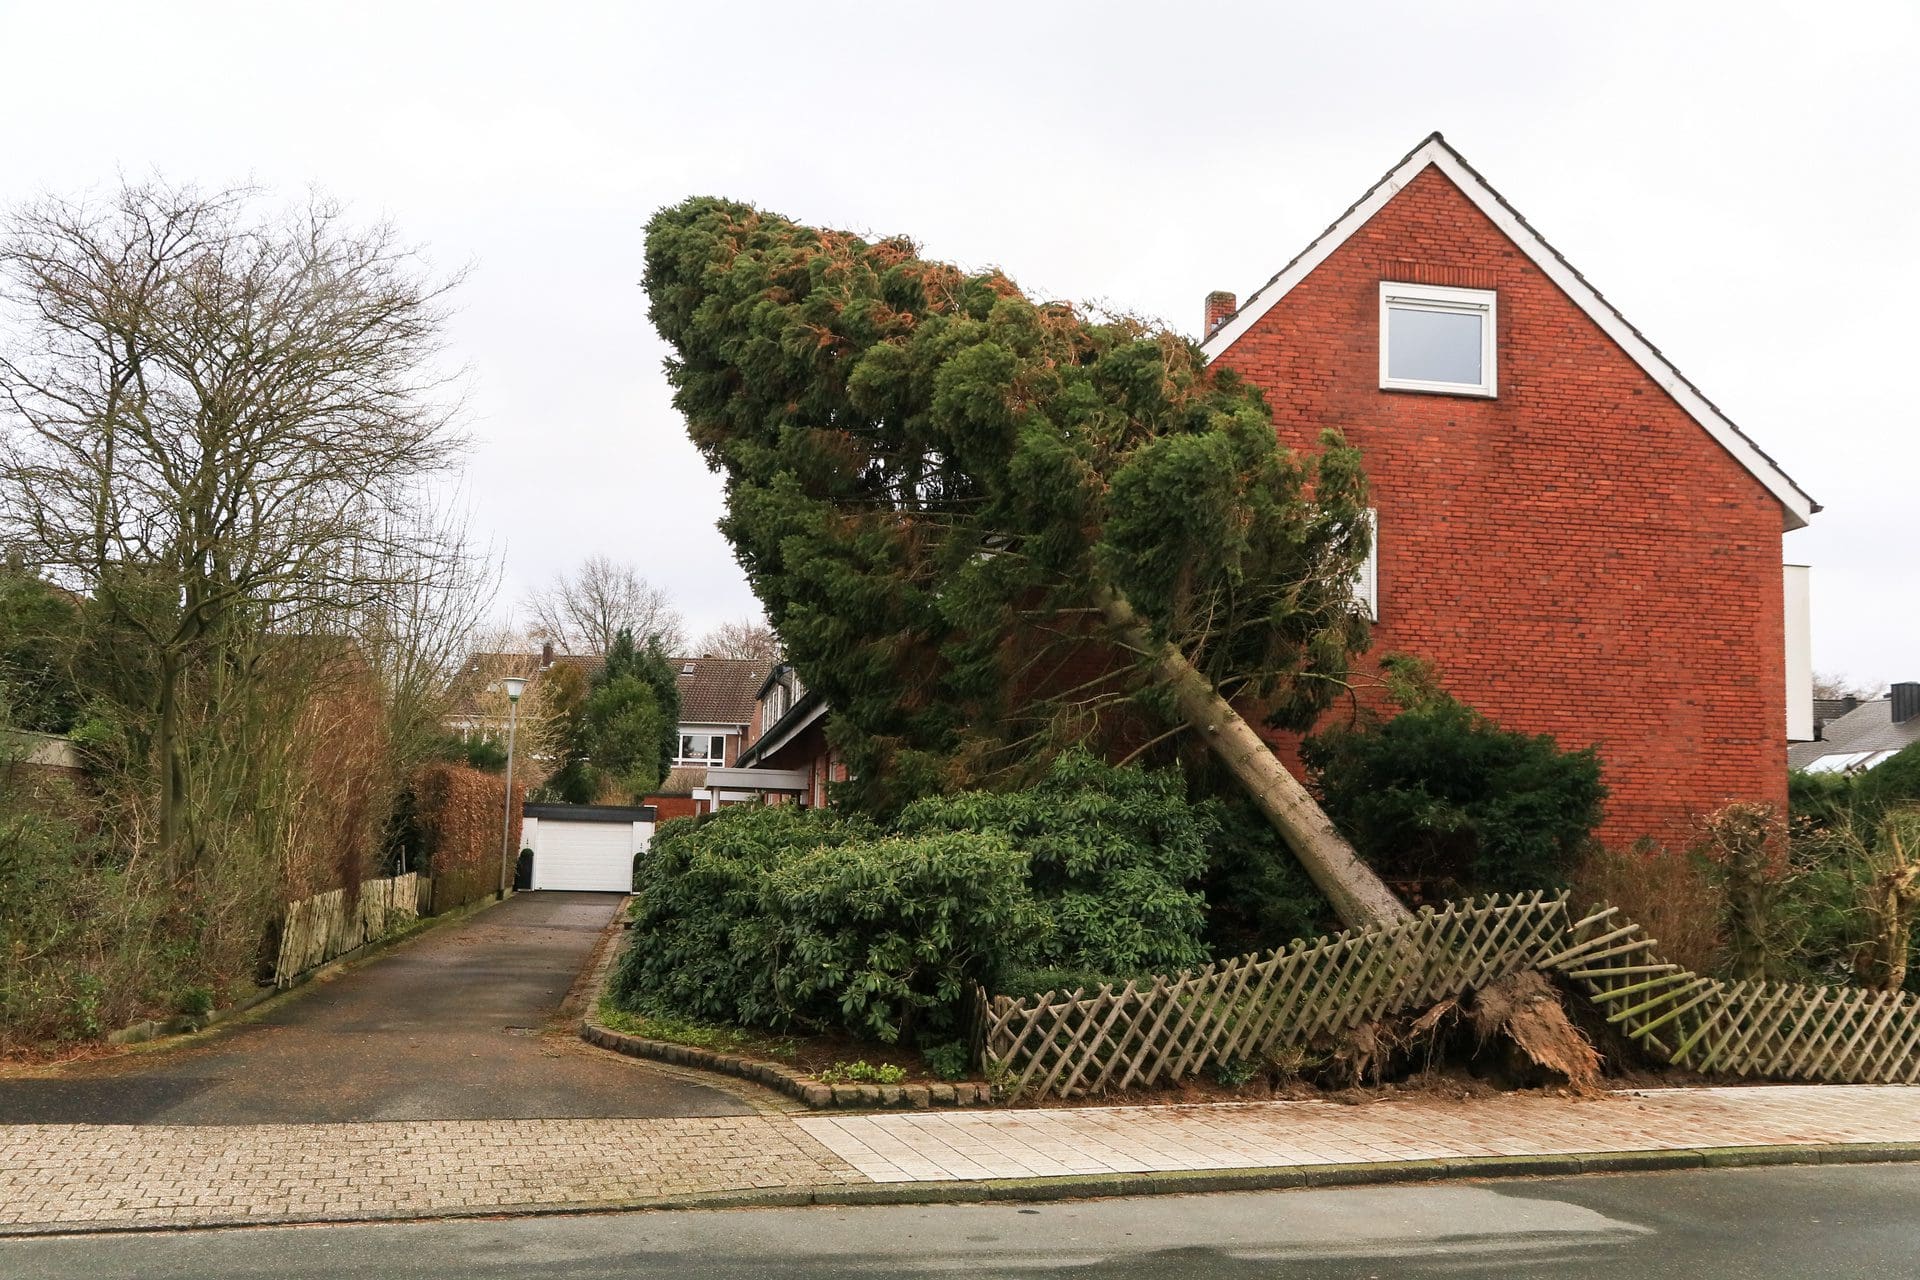 Baum auf Wohngebäude und Zaun gefallen nach Sturm - Wer kommt im Schadenfall für die Zerstörung auf? (© photofranz56 / stock.adobe.com)